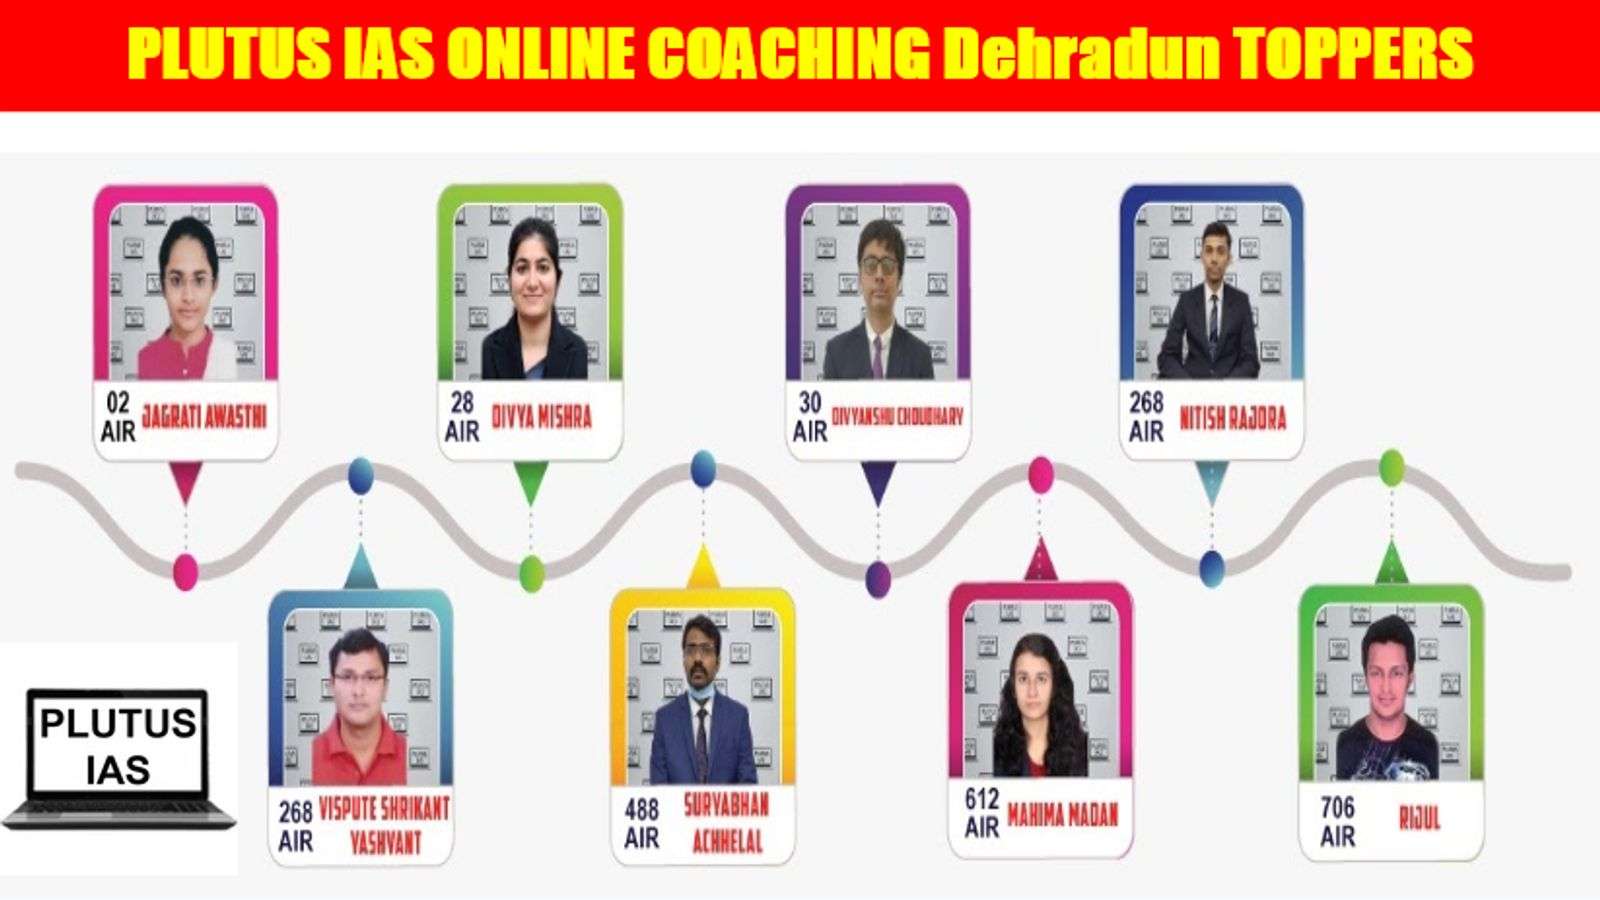 Plutus IAS Online Coaching Dehradun Toppers